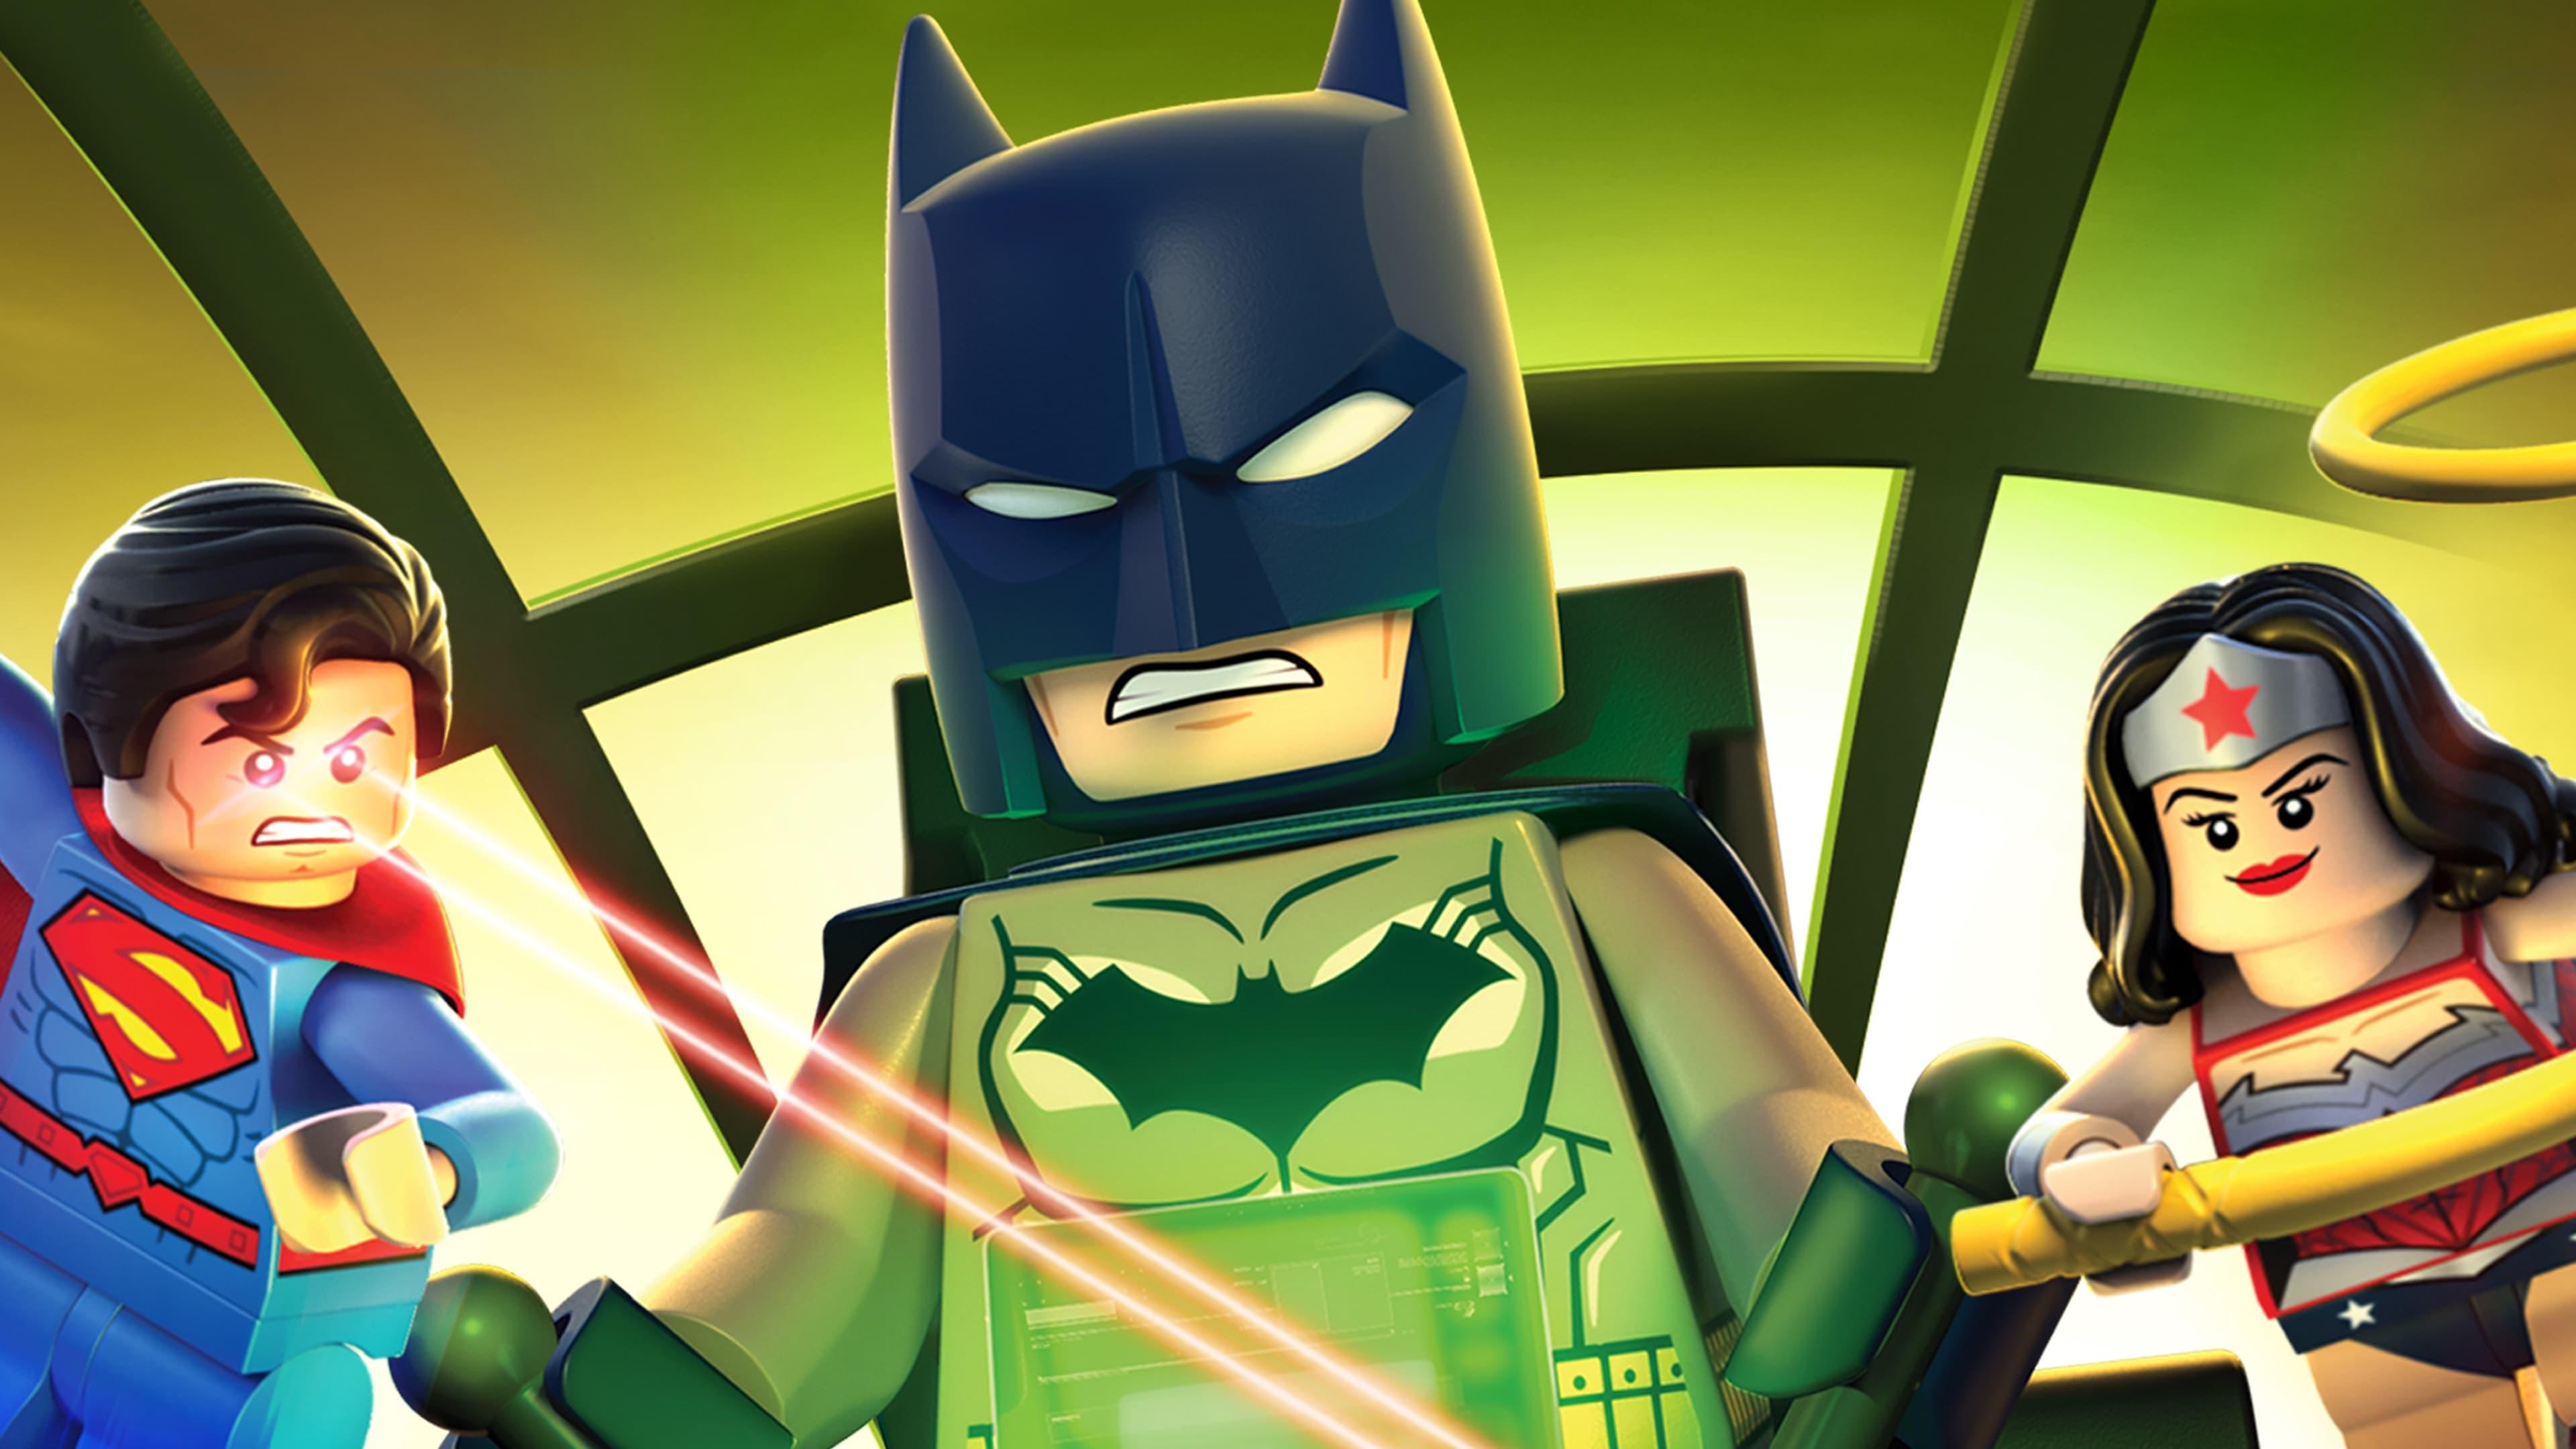 LEGO DC Comics Super Heroes: Justice League - Gotham City Breakout backdrop